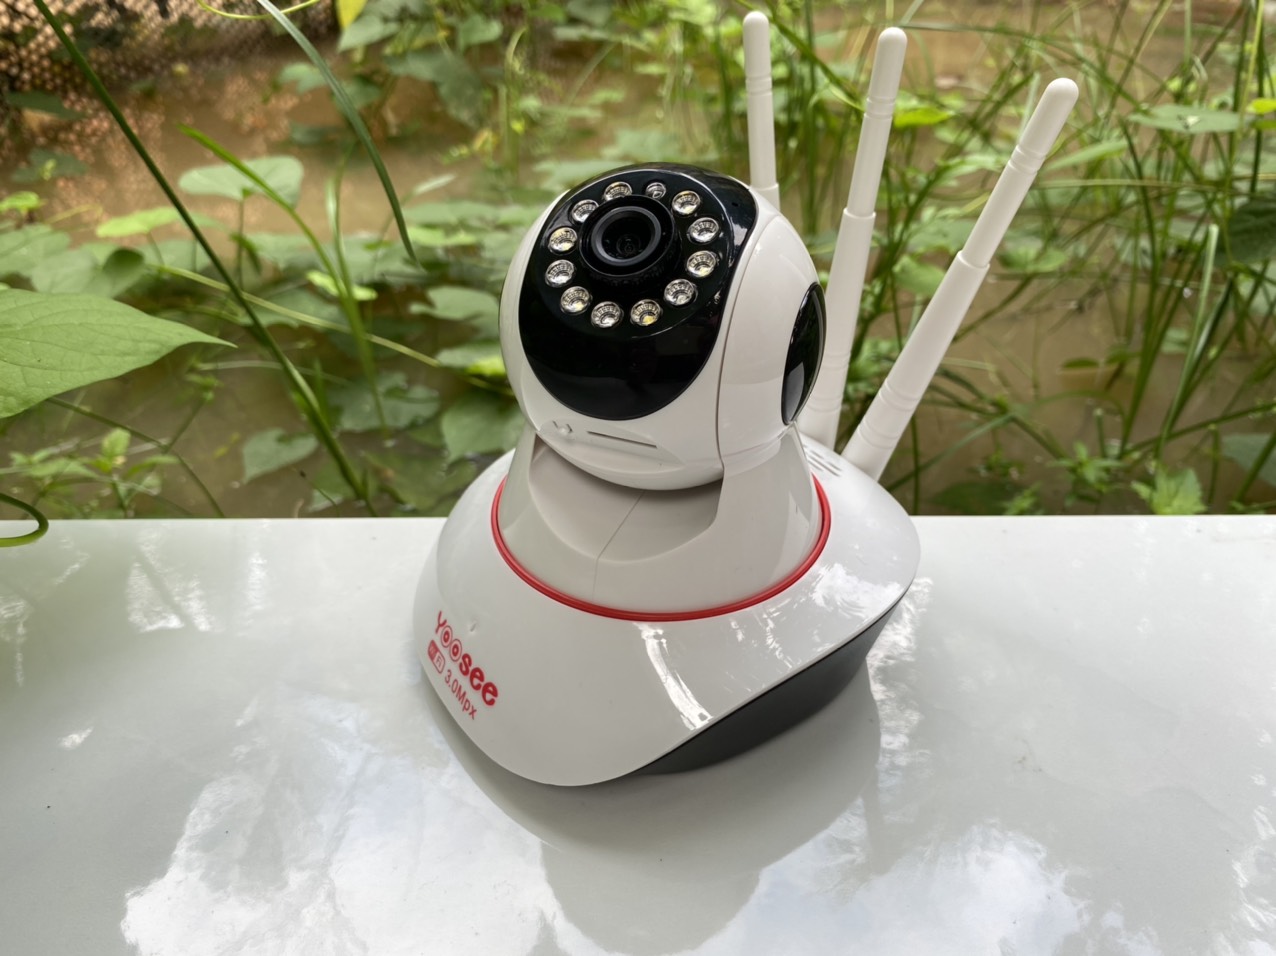 Camera yoosee 3 râu H2Pro 2021 siêu nét 3.0mpx, góc rộng, camera yoosee 1080p 3 râu 2021 cao cấp giá rẻ